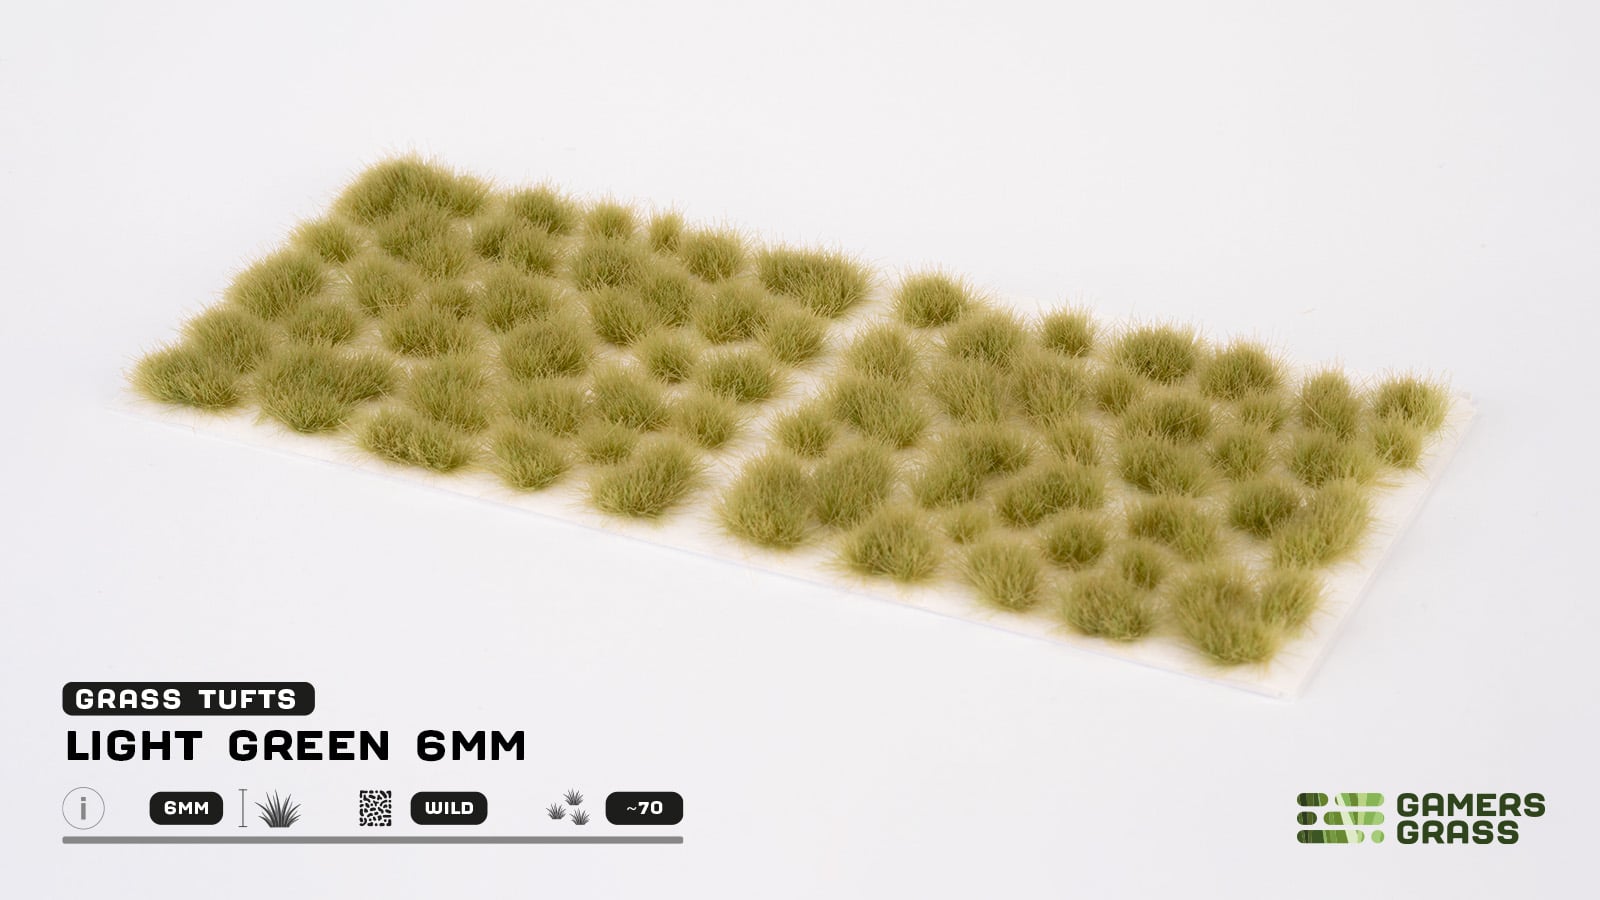 Light Green 6mm Tufts (Wild) - Gamers Grass